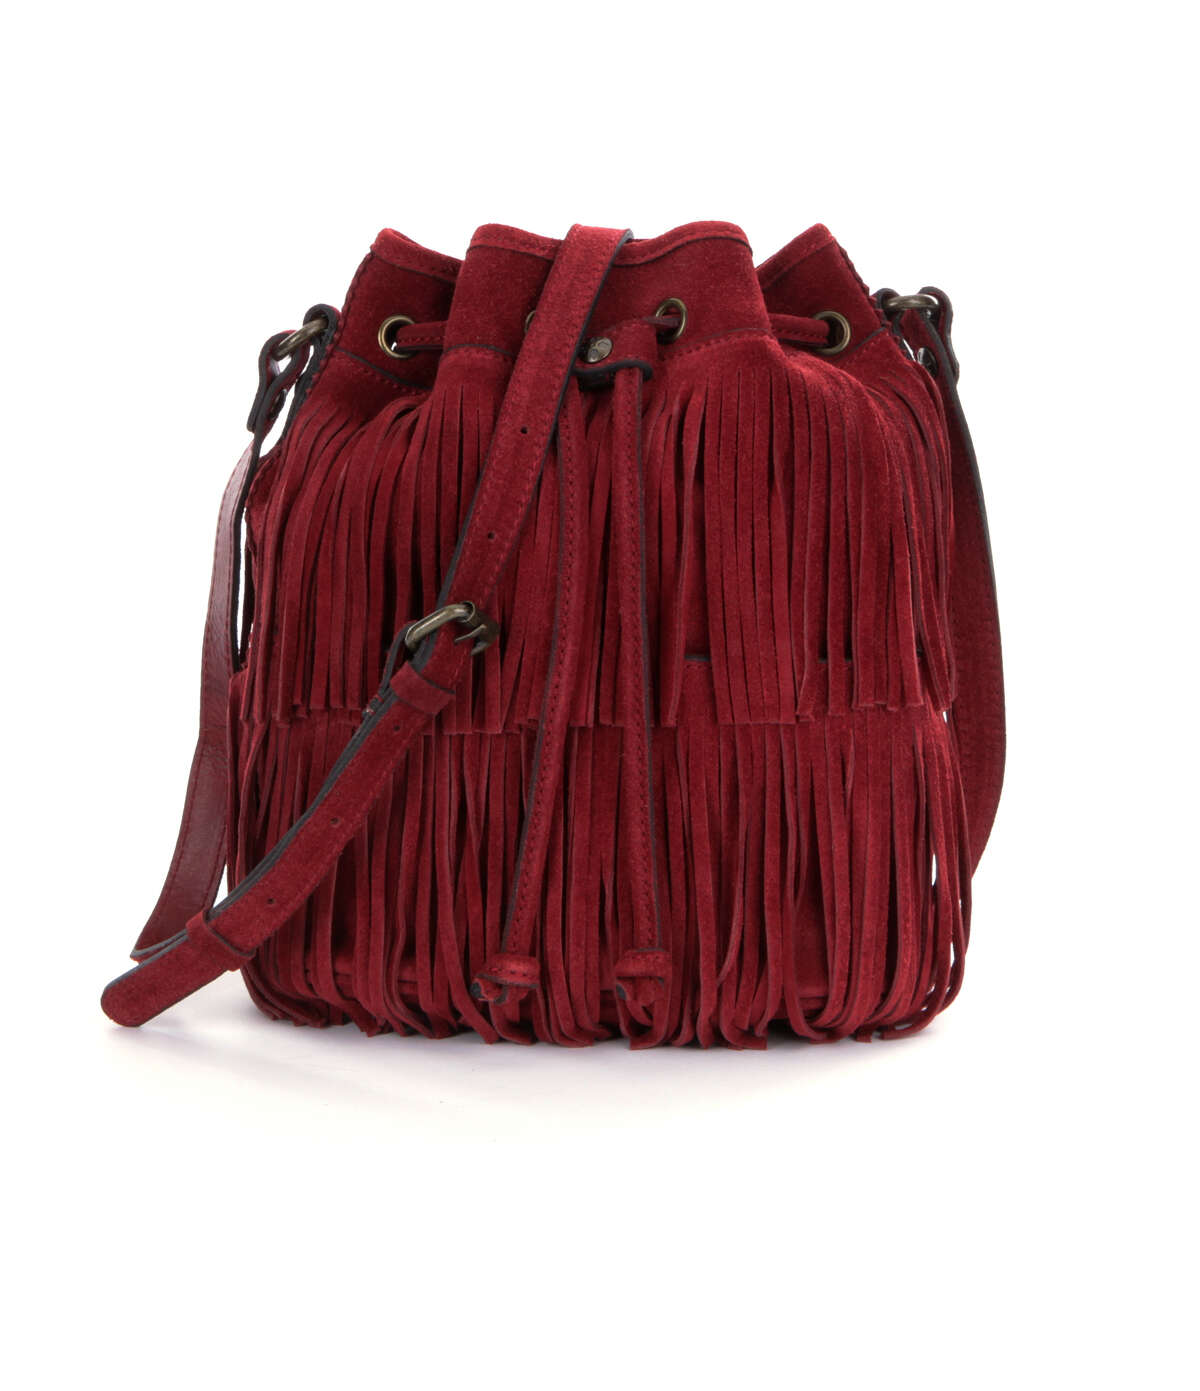 Vintage Dillards Suede Bag Black Leather Shoulder Strap Handbag Purse